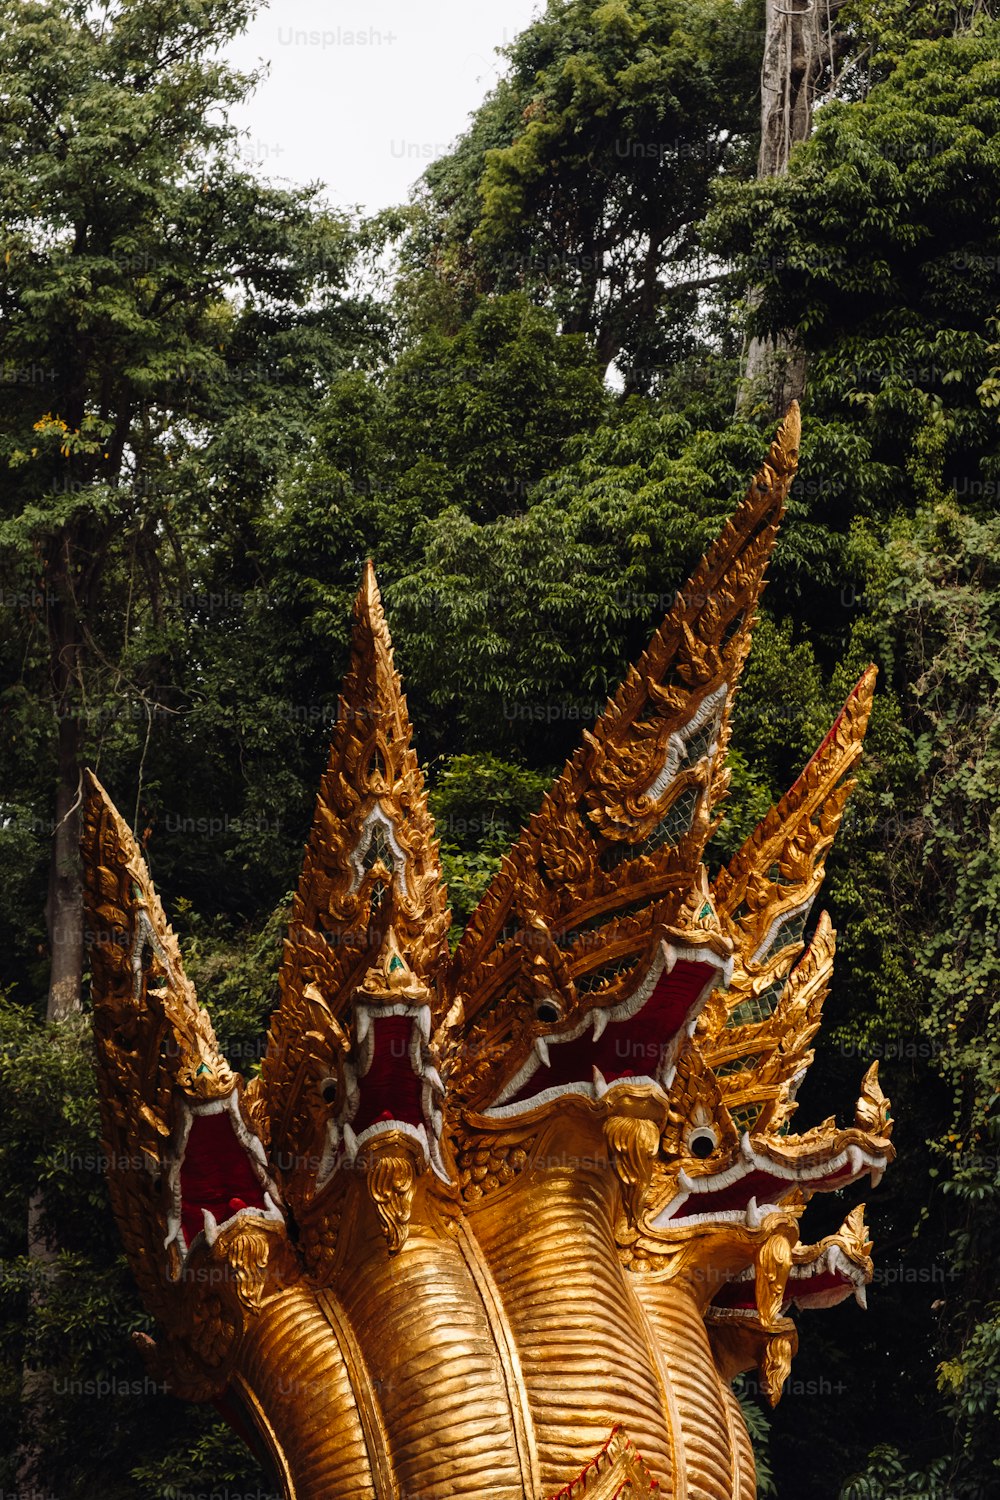 Una grande statua dorata del drago di fronte a una foresta